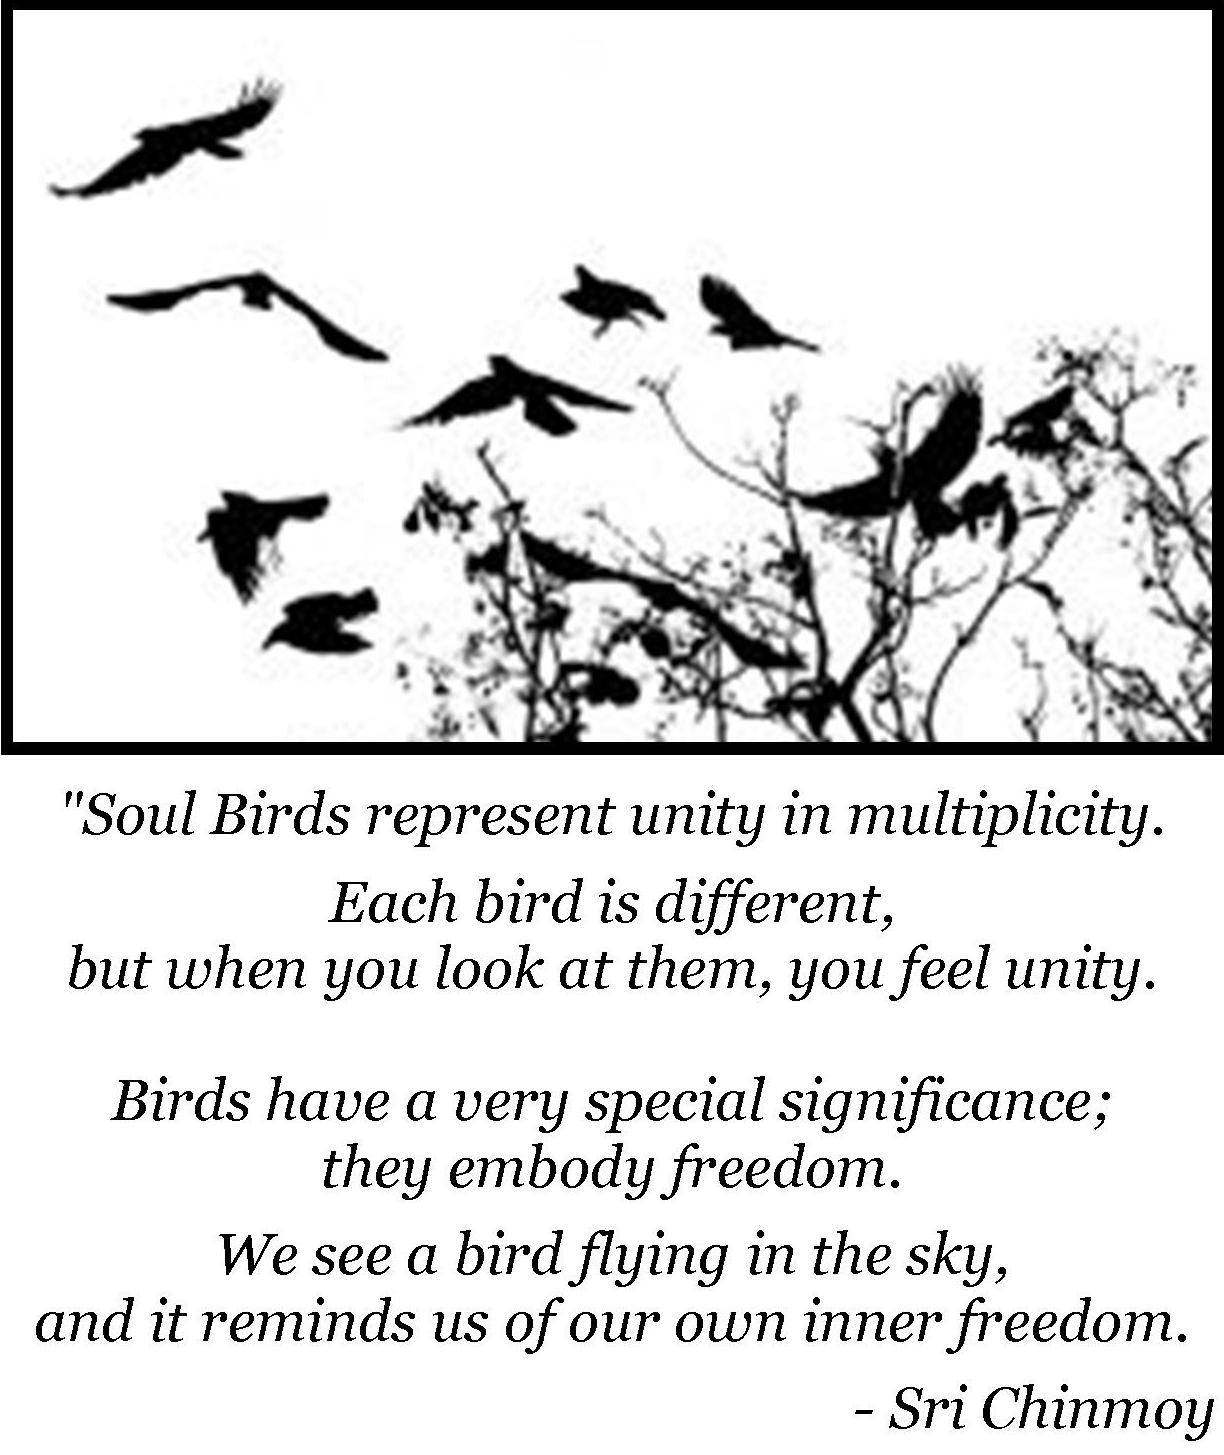 Bird Beak Types